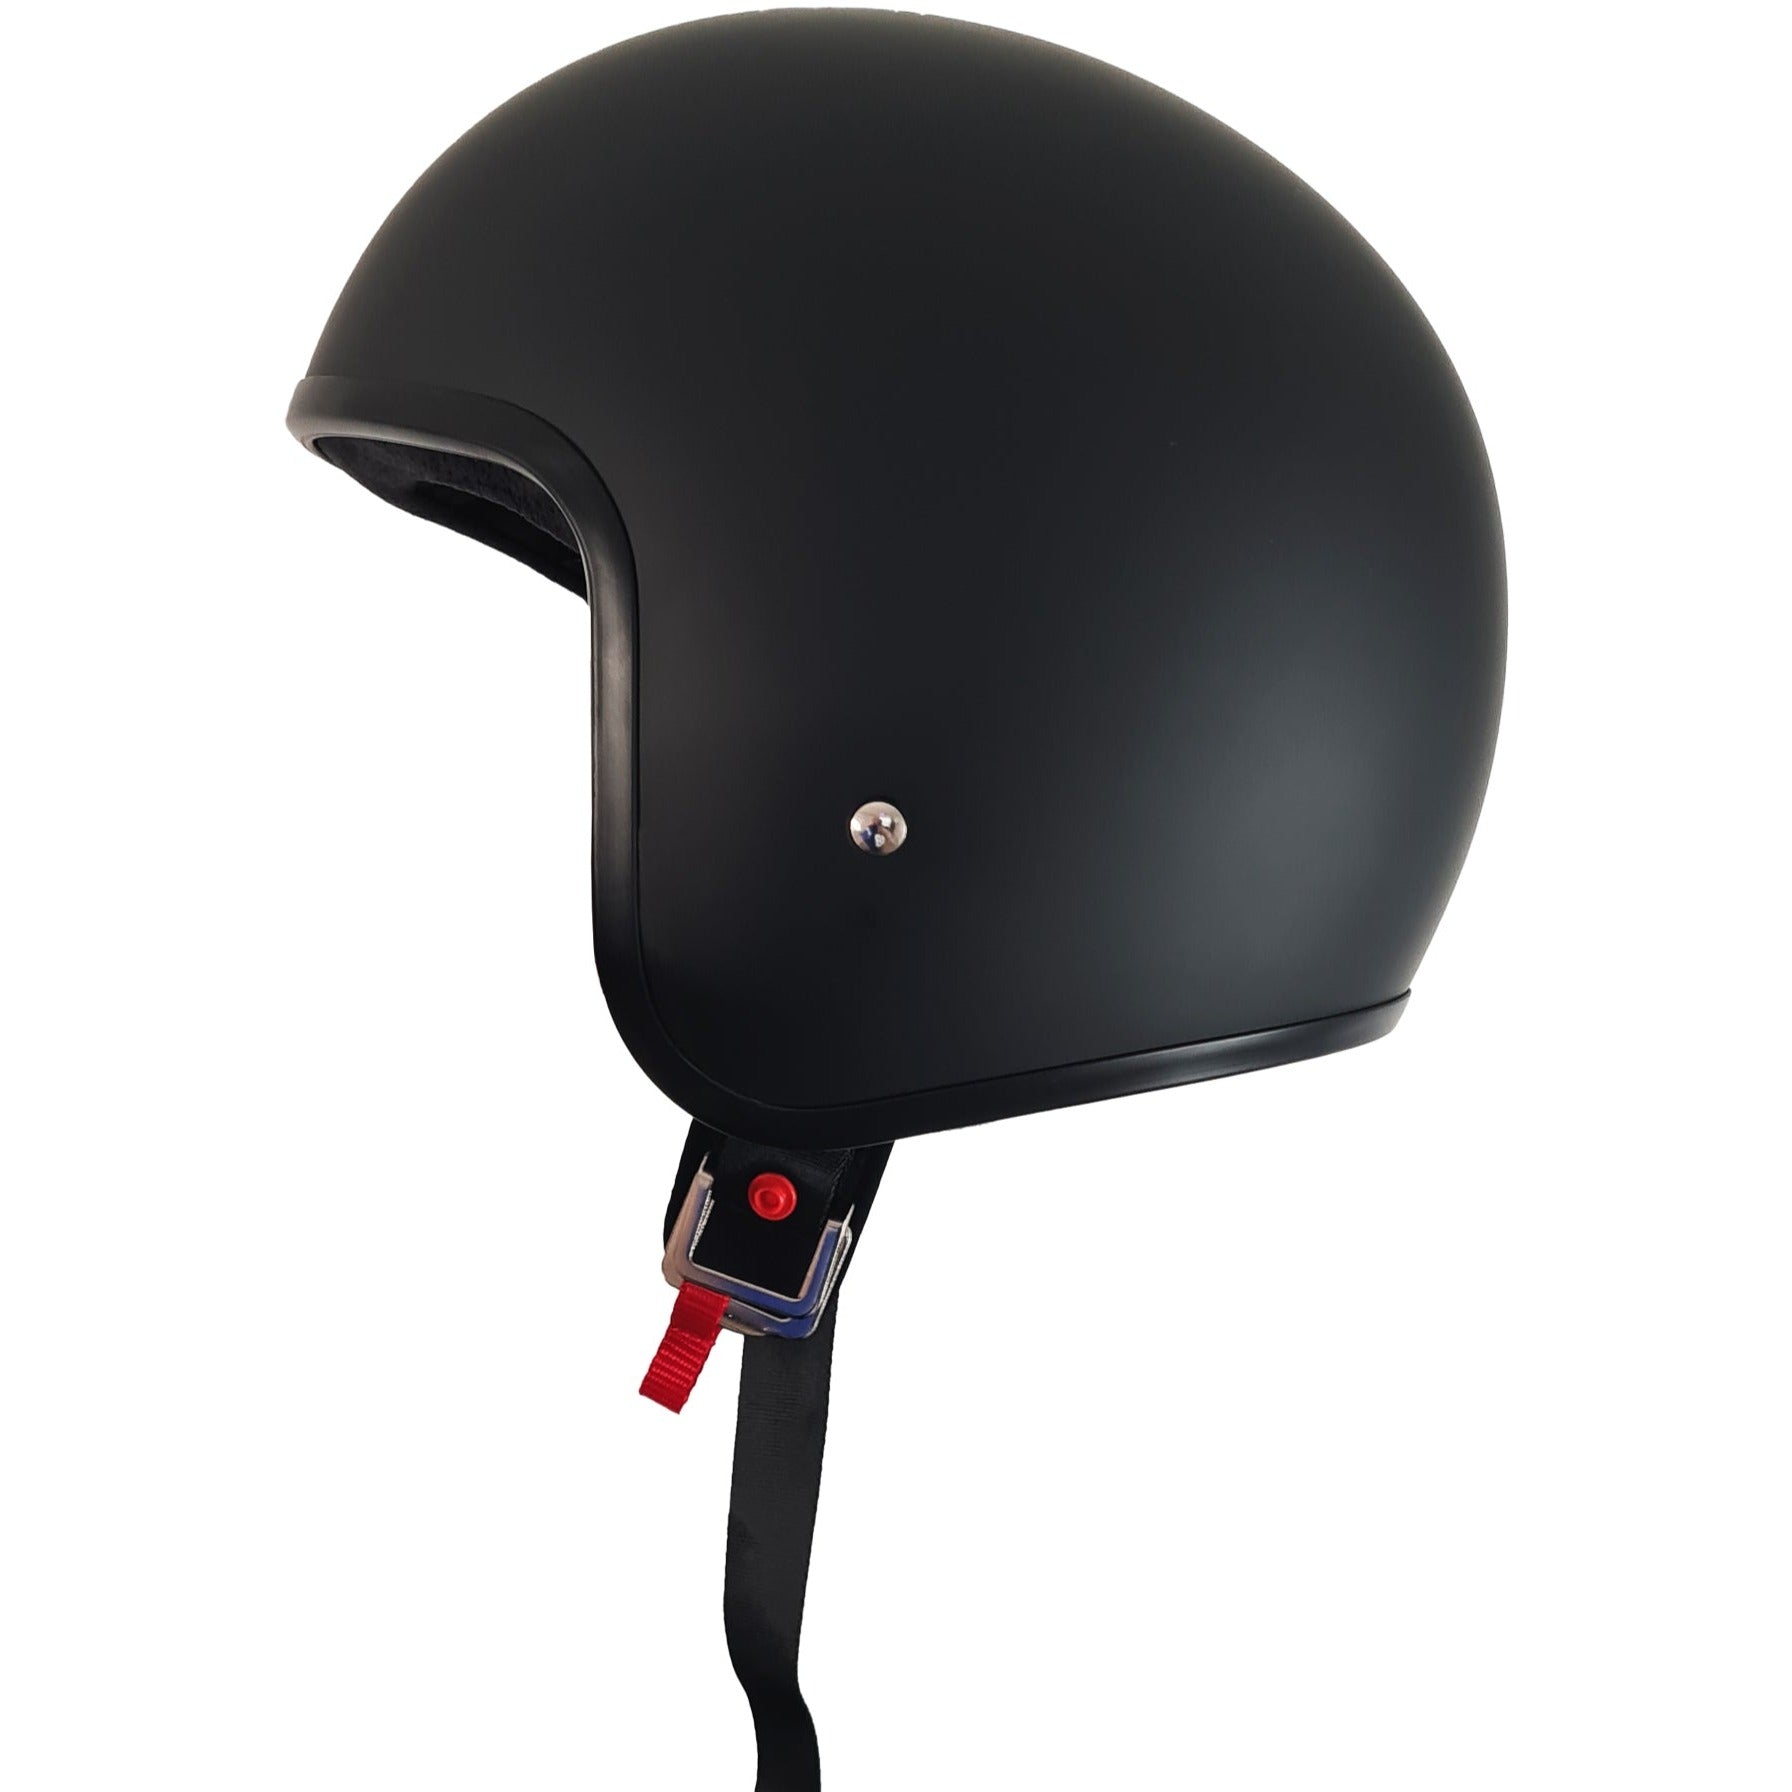 Lowest Legal Profile Motorcycle Helmet